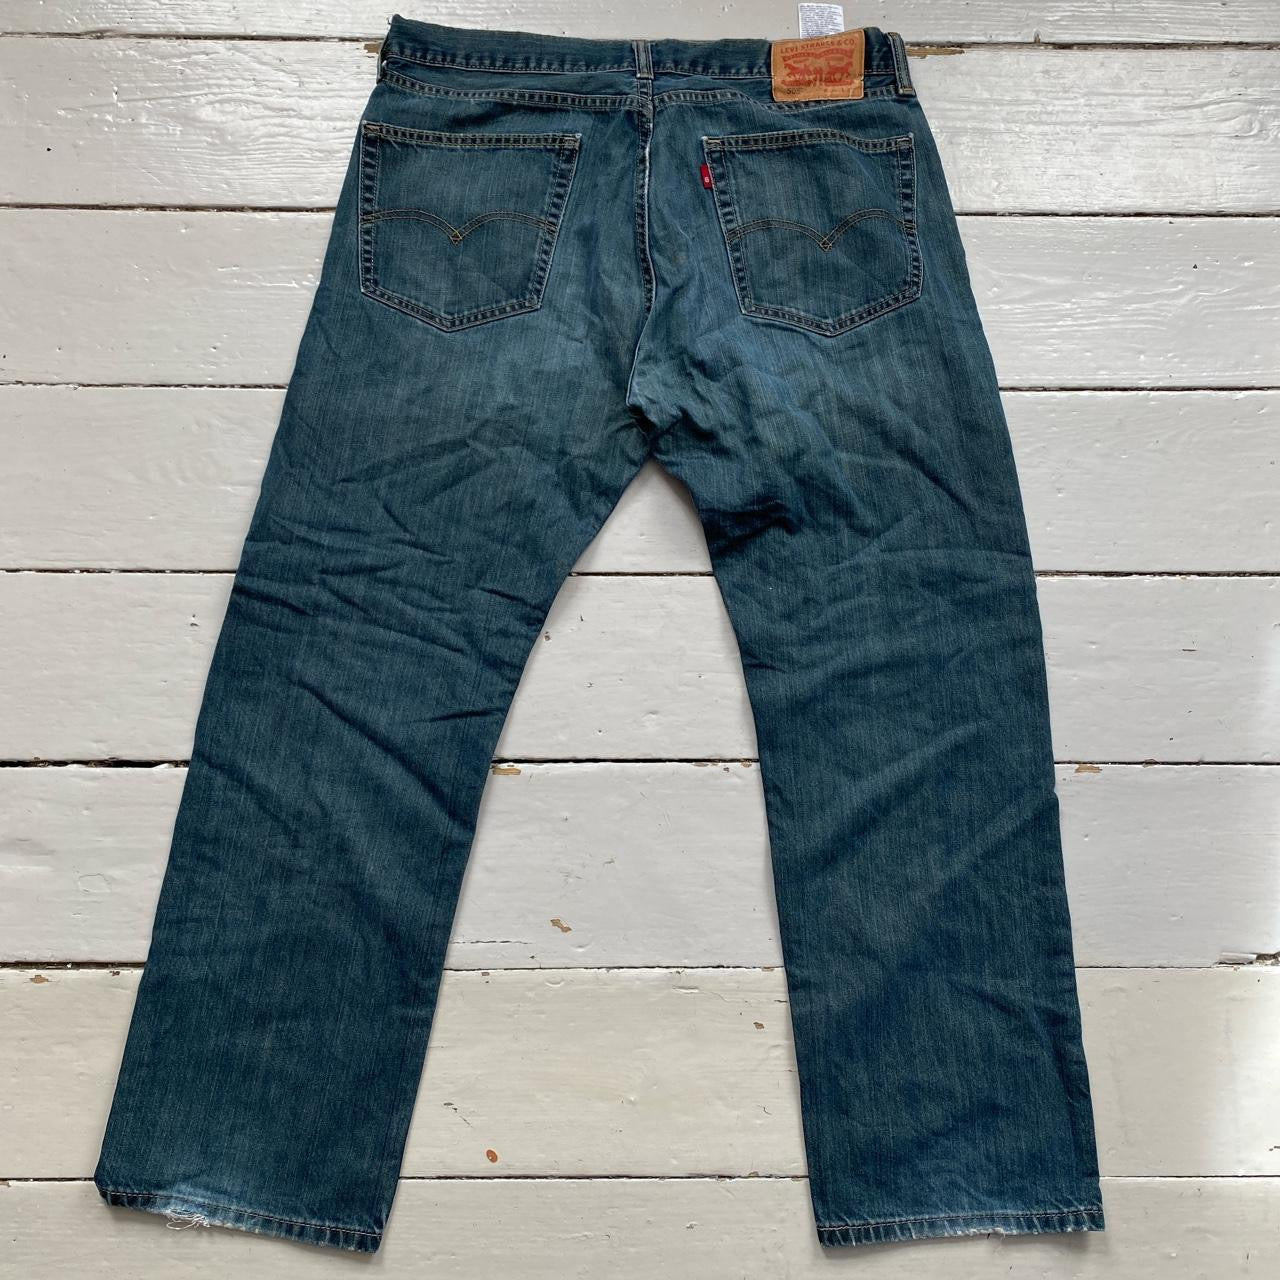 Levis 505 Blue Jeans (36/30)